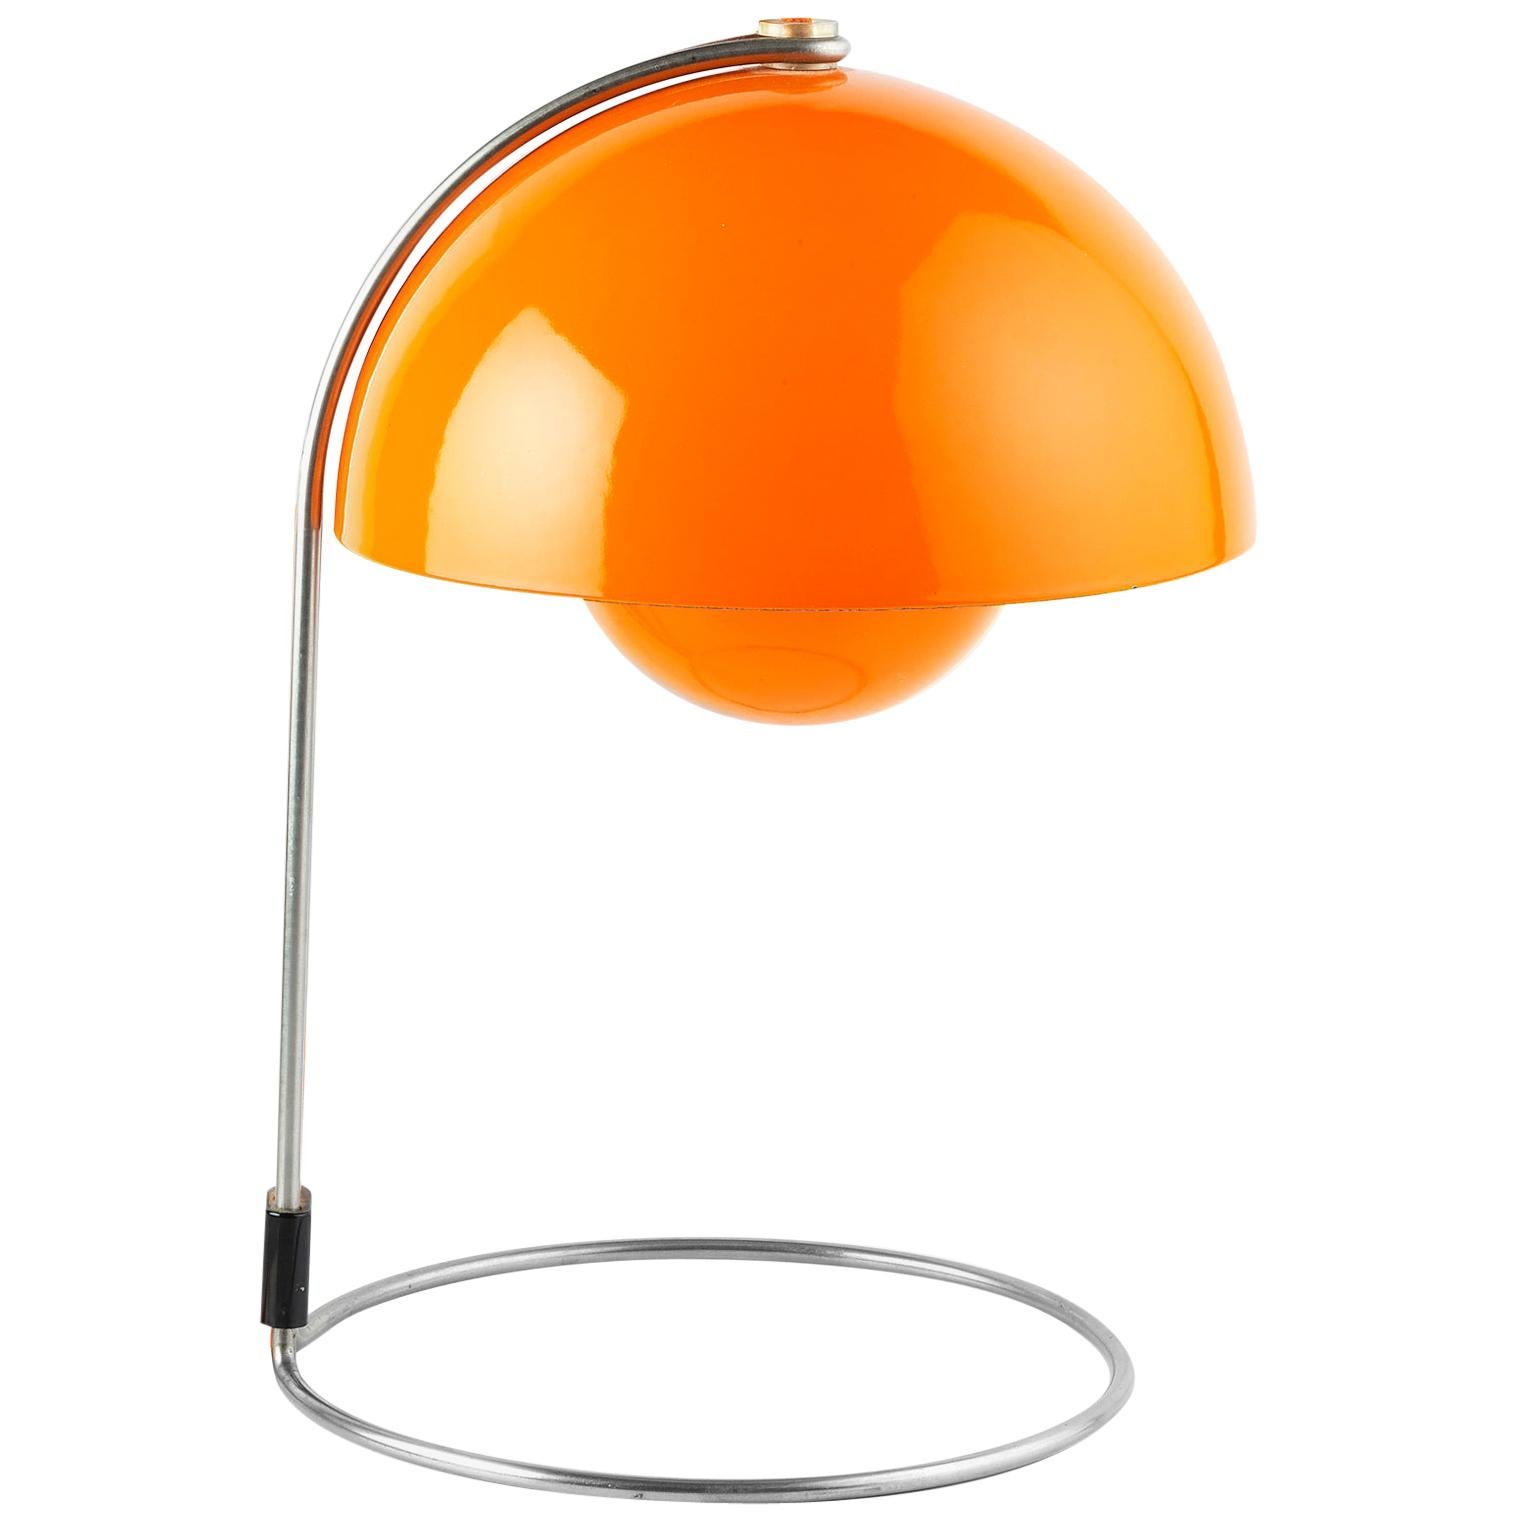 Verner Panton Vintage Midcentury Orange Space Age Flowerpot Lamp For Sale